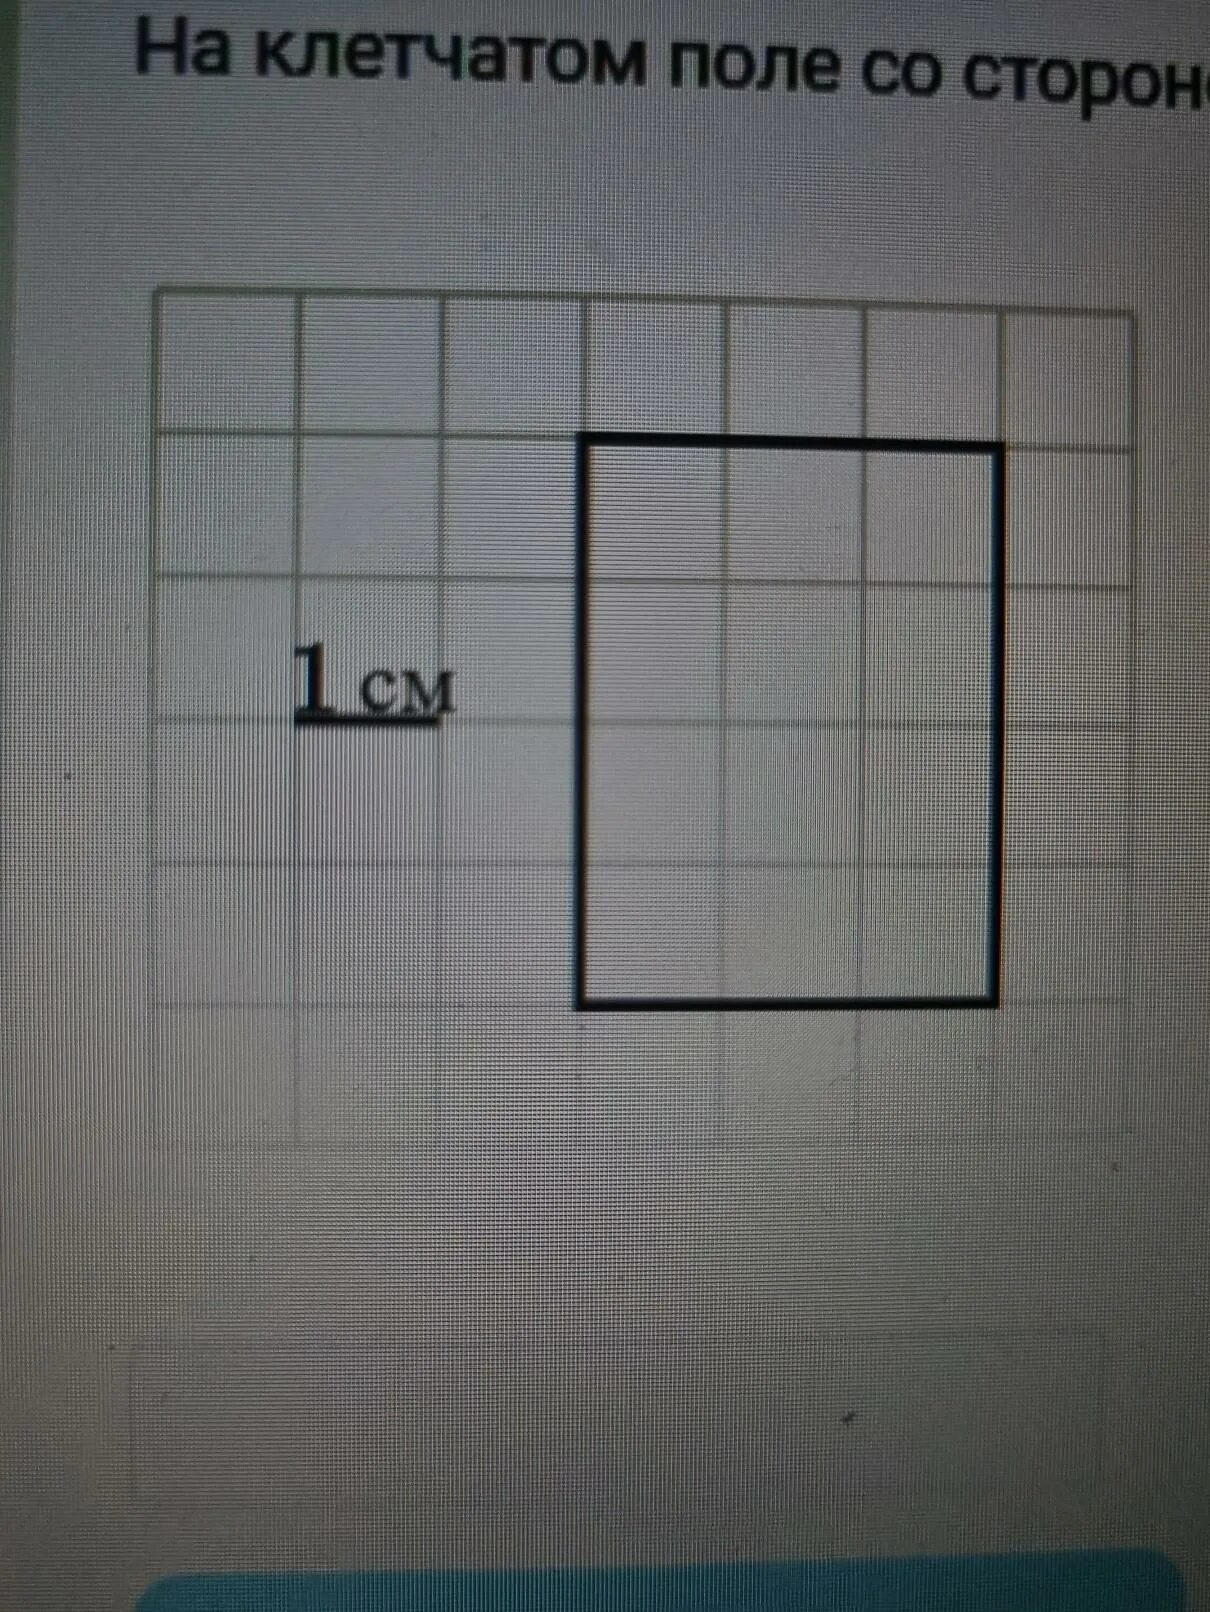 Площадь прямоугольника со стороной клетки 1 сантиметр